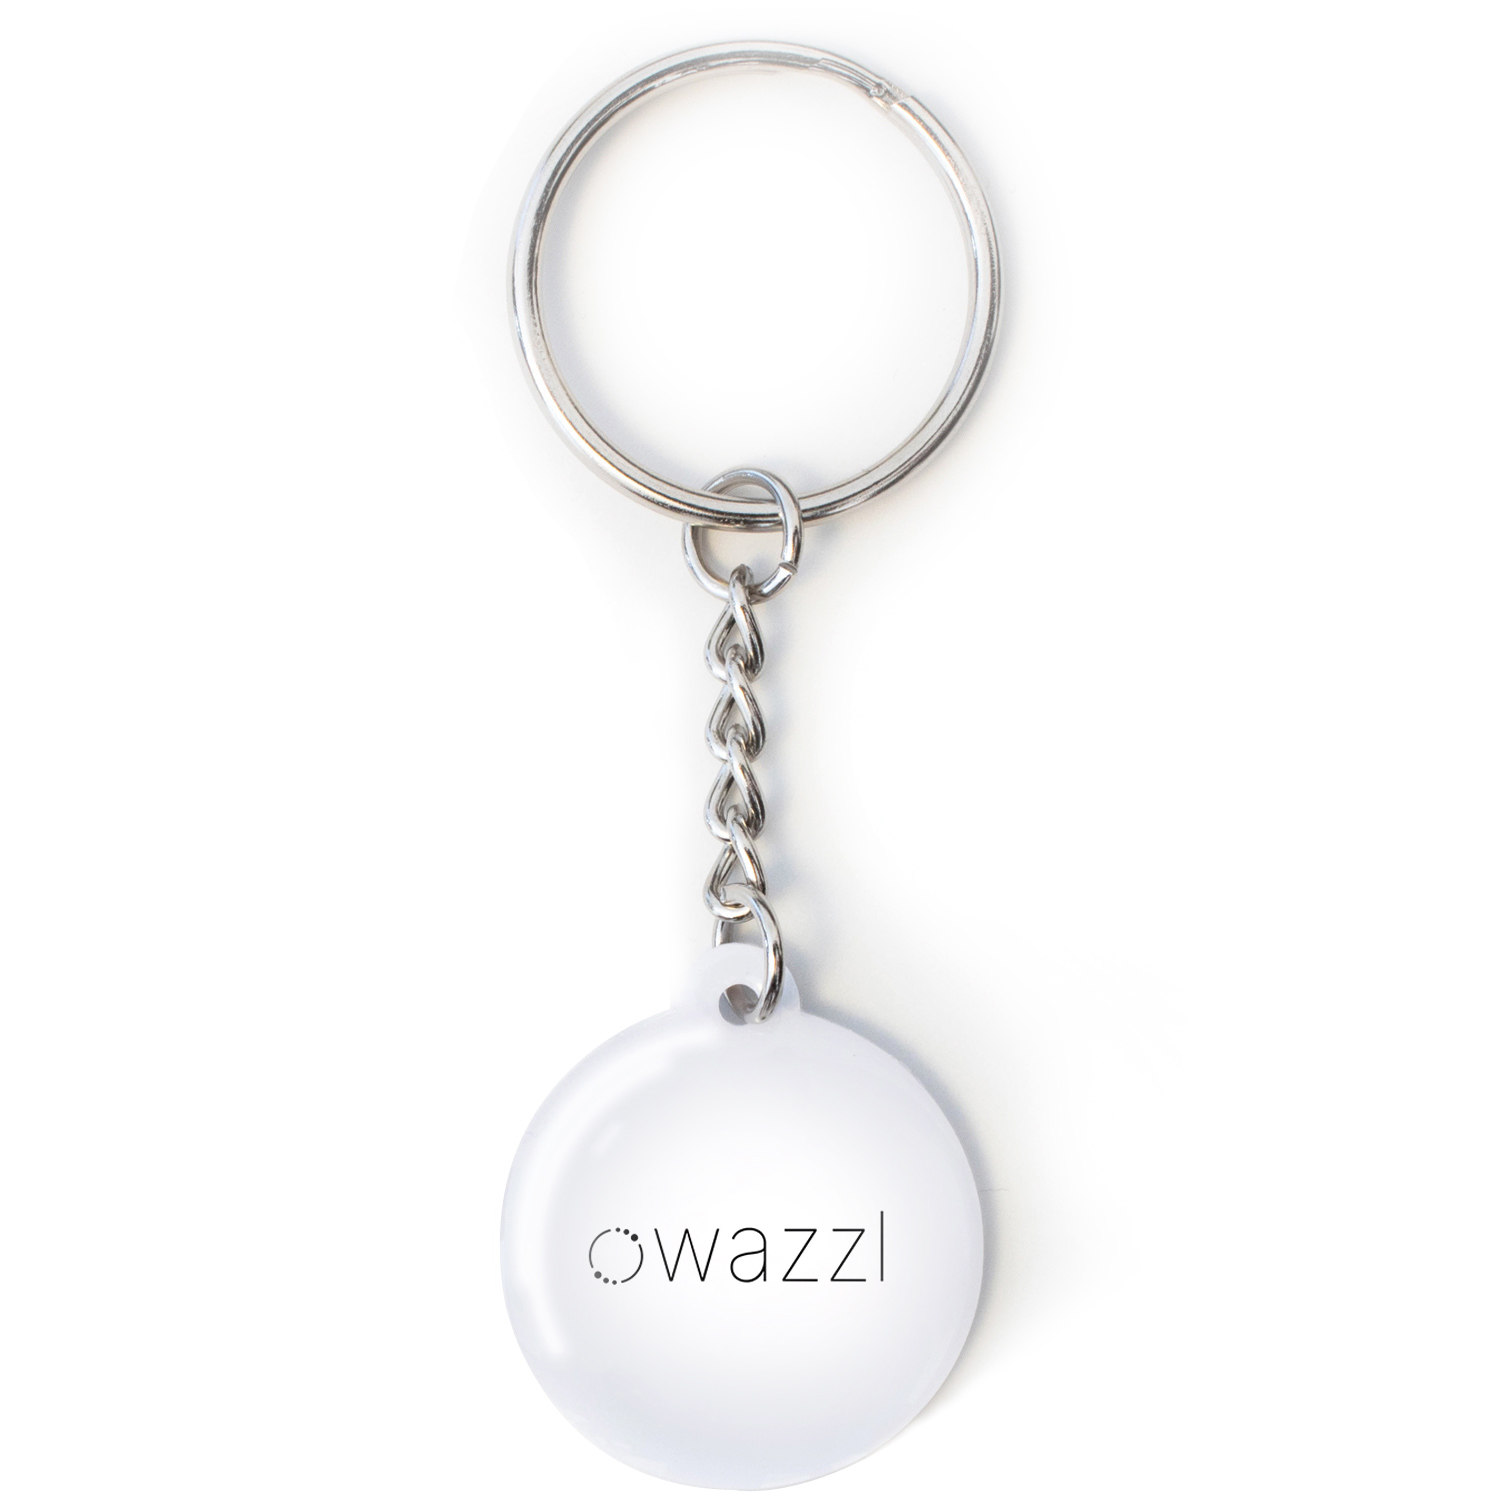 wazzl keychain white - Digital business card